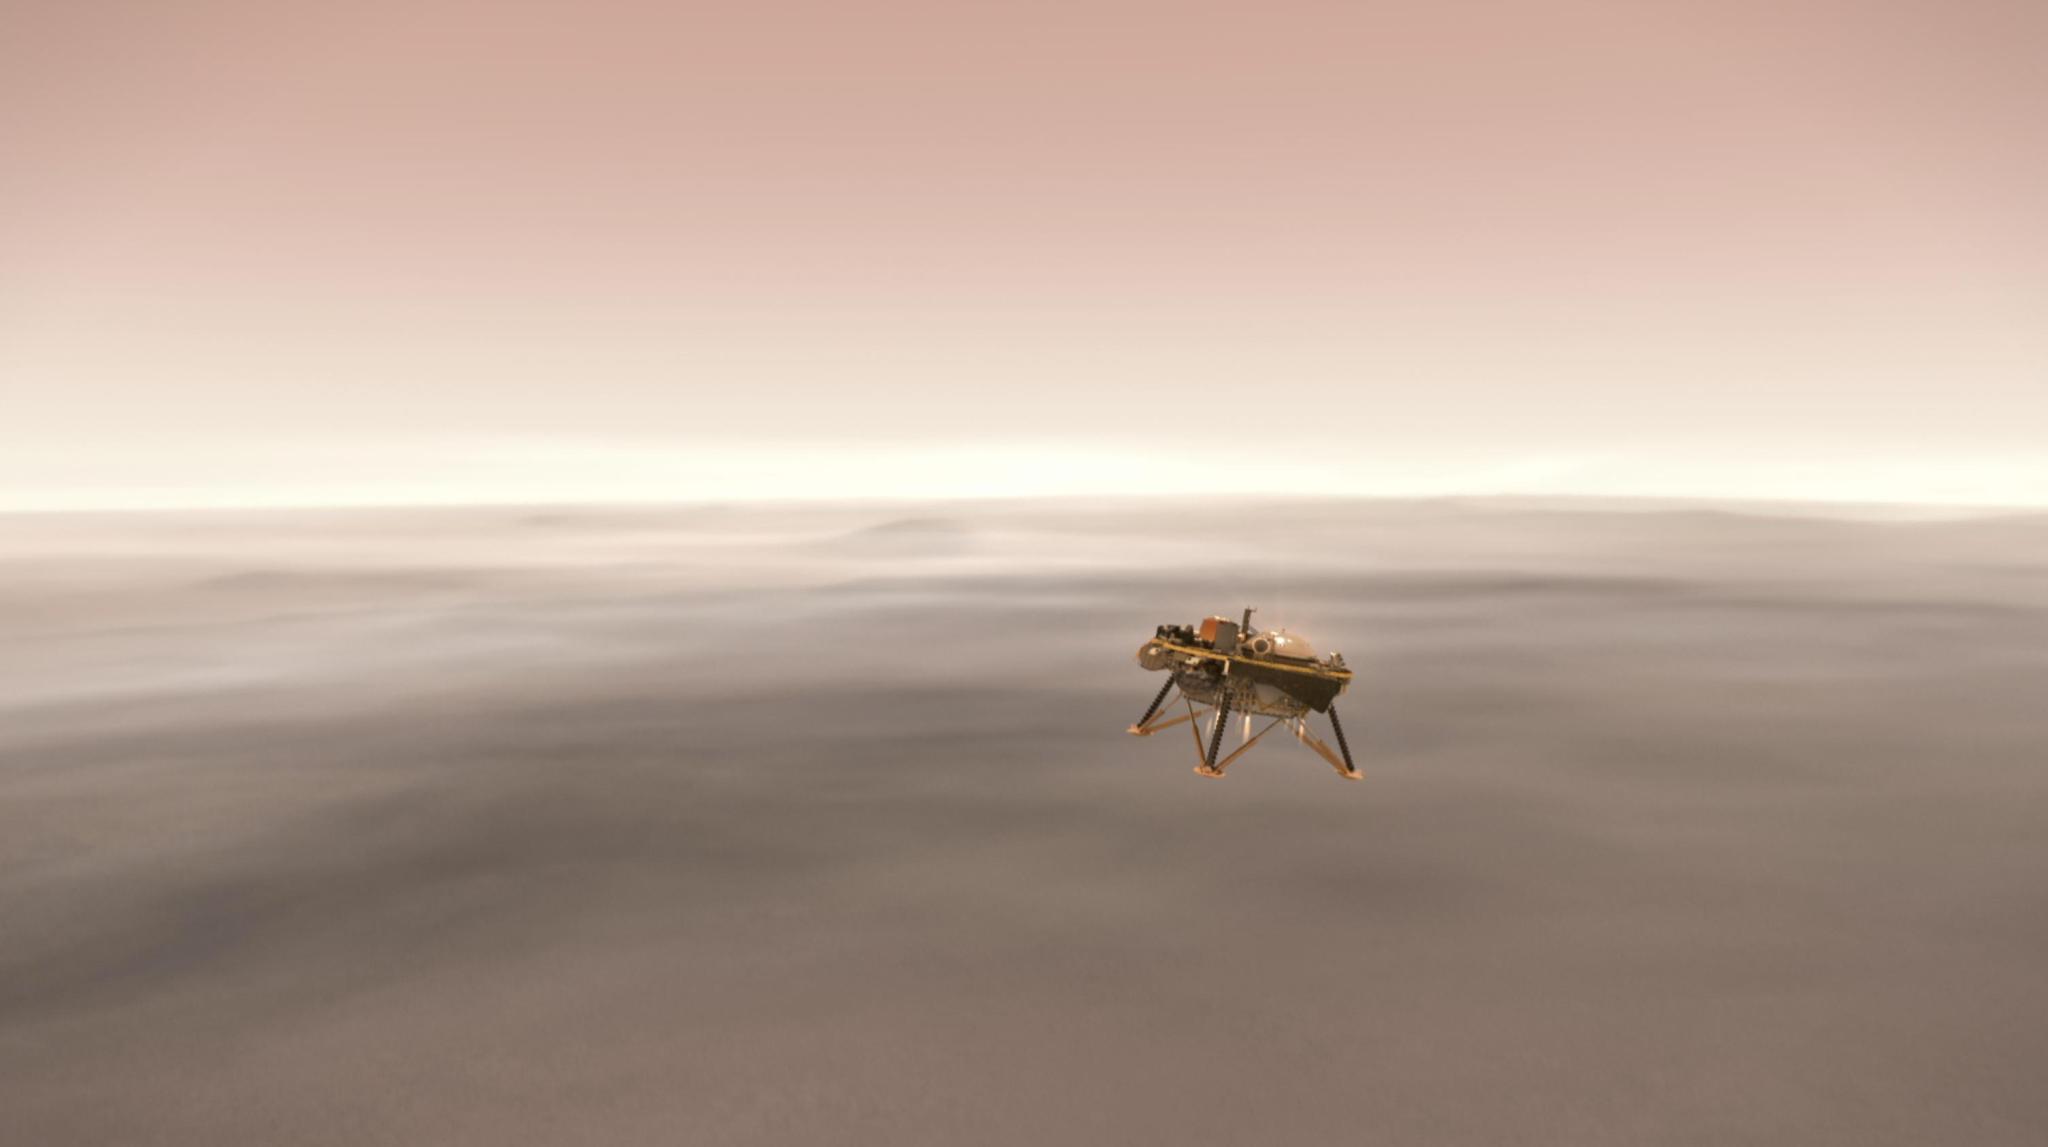 NASA's InSight lander descending toward the surface of Mars.